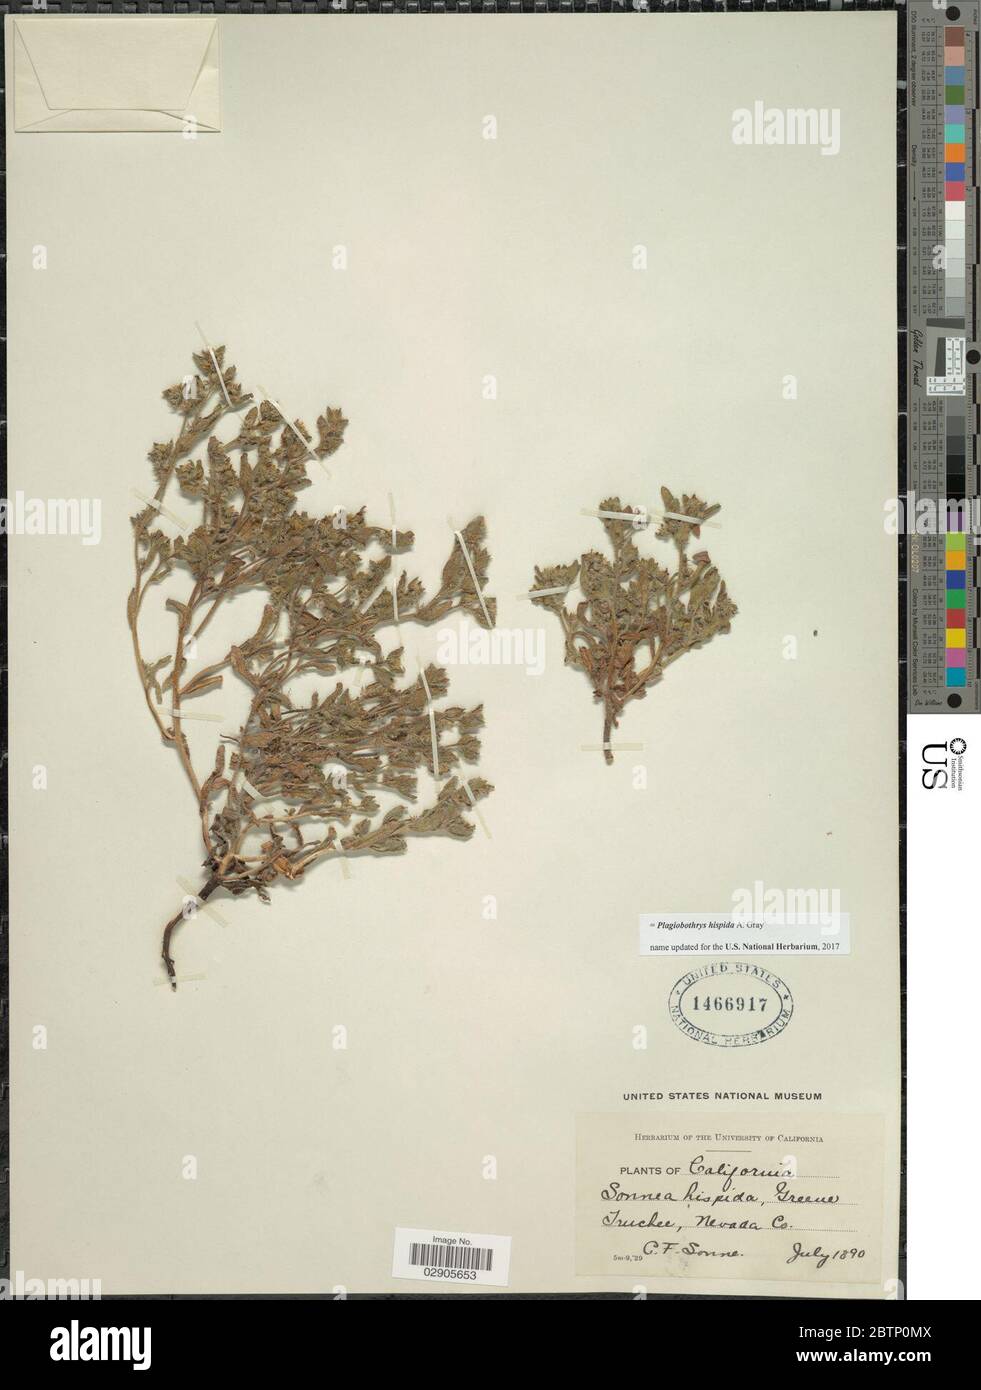 Plagiobothrys hispida A Gray. Stock Photo